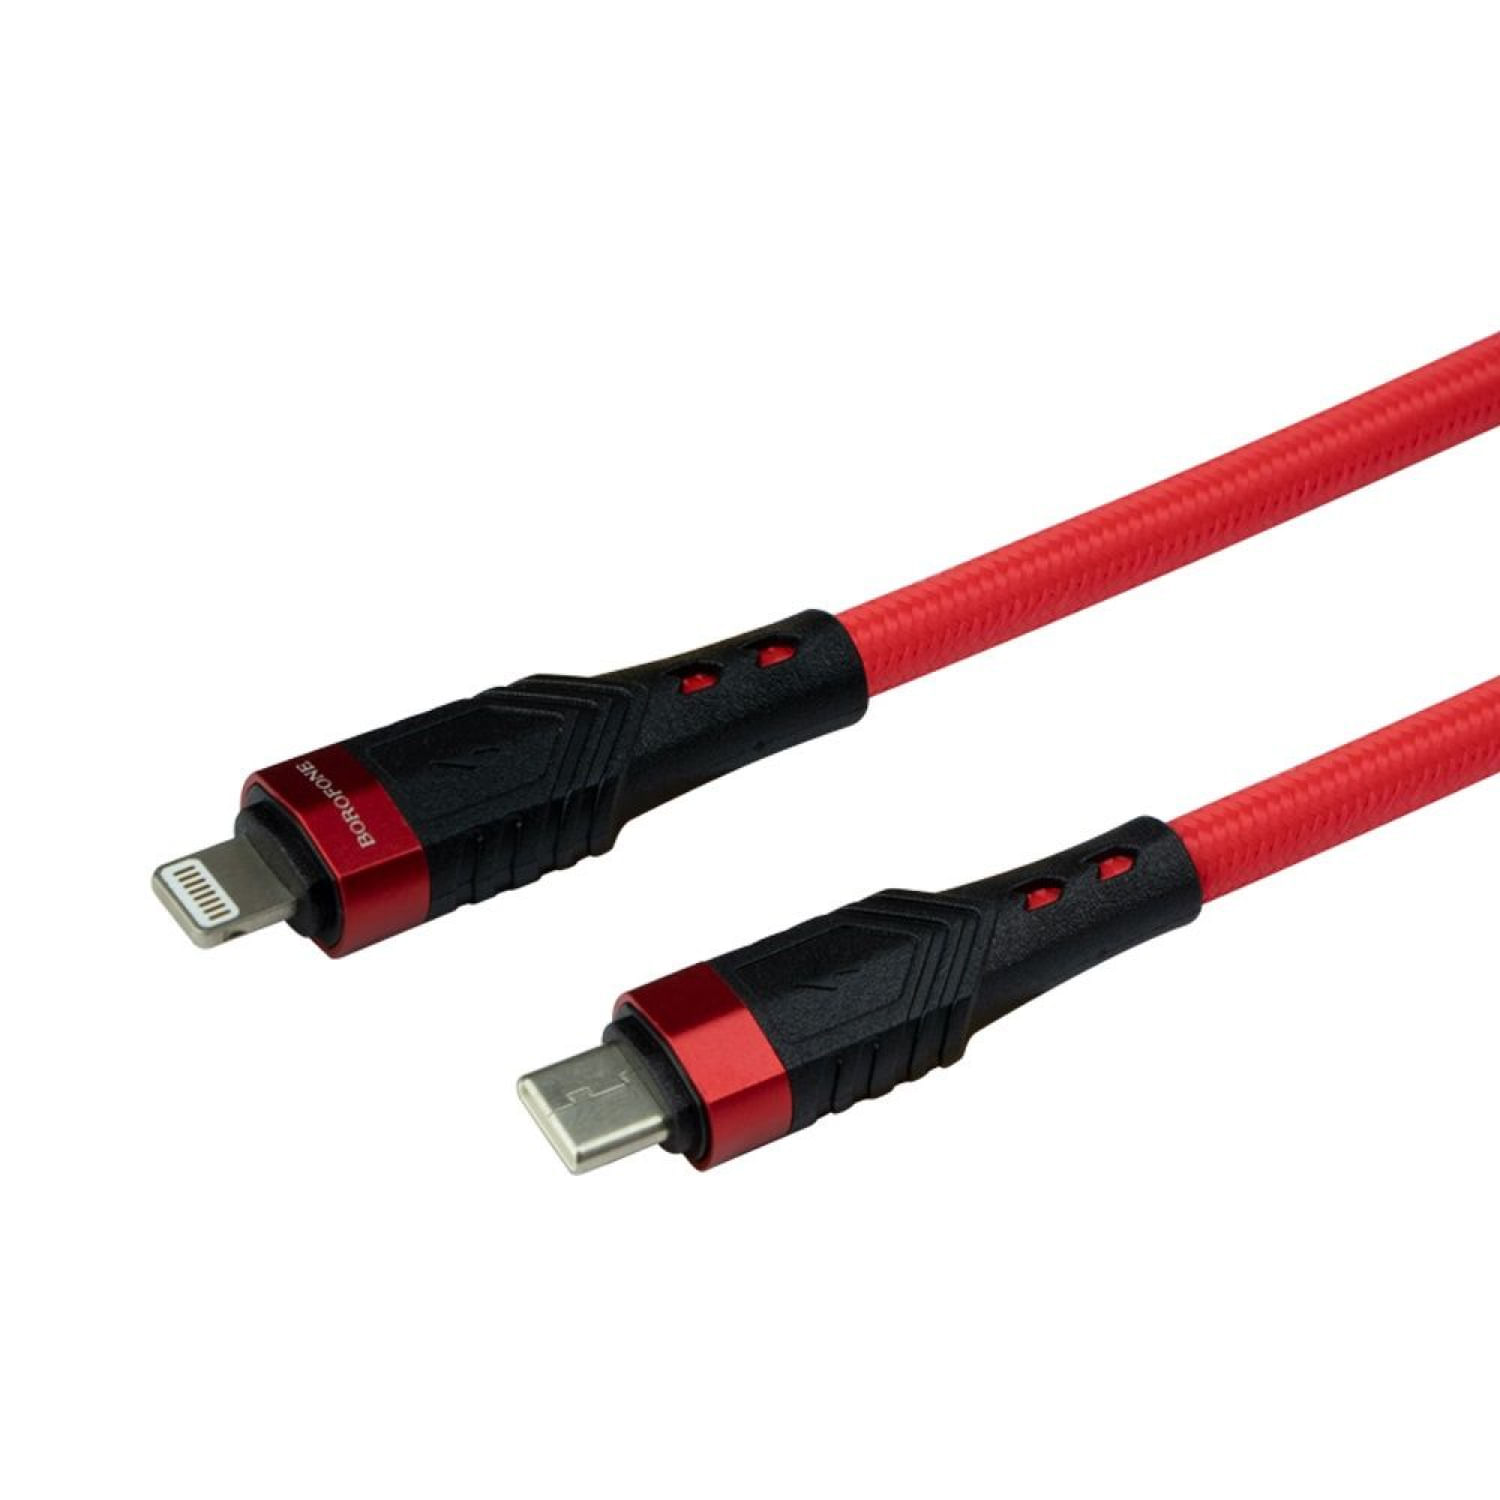 Cable D Datos Carga Rapida Trenza Influence Pd D Tipo C Lightning Para Iphone 20w 1.2m Bu35 Rojo